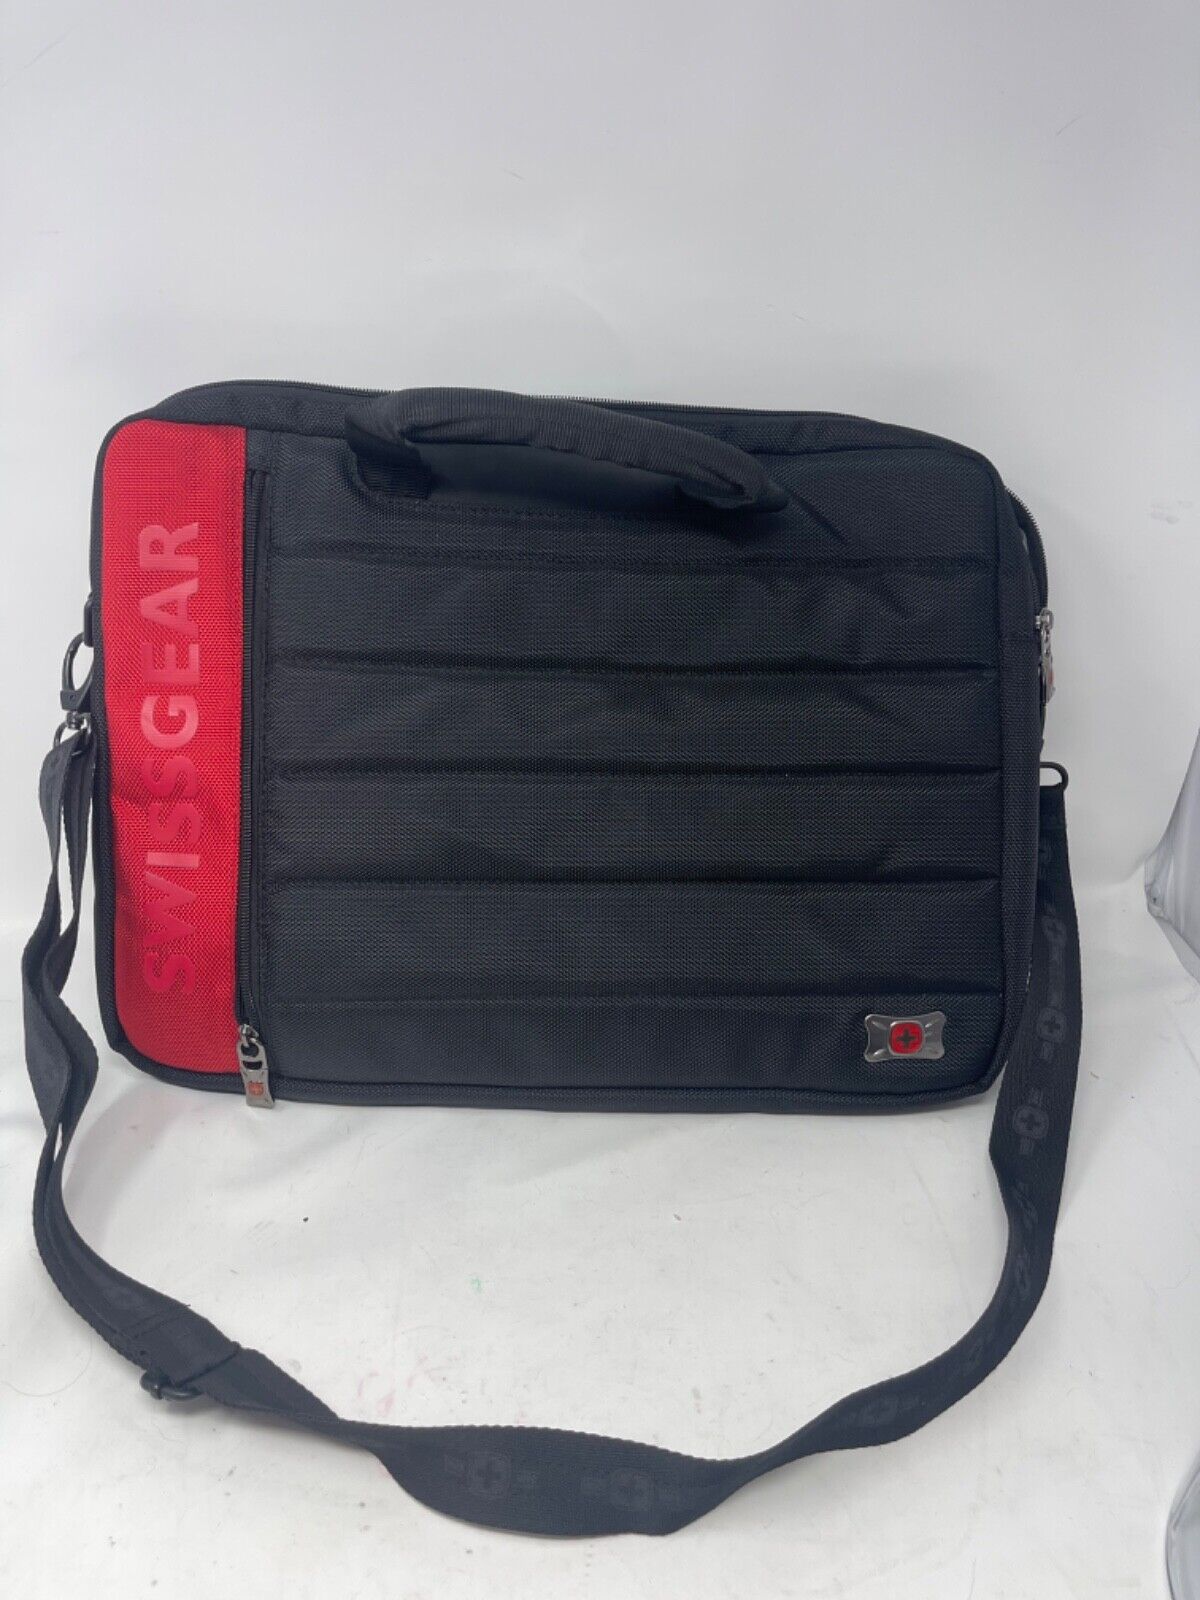 SWISSGEAR by wenger travel swissgear Lap Top Bag Messenger Bag